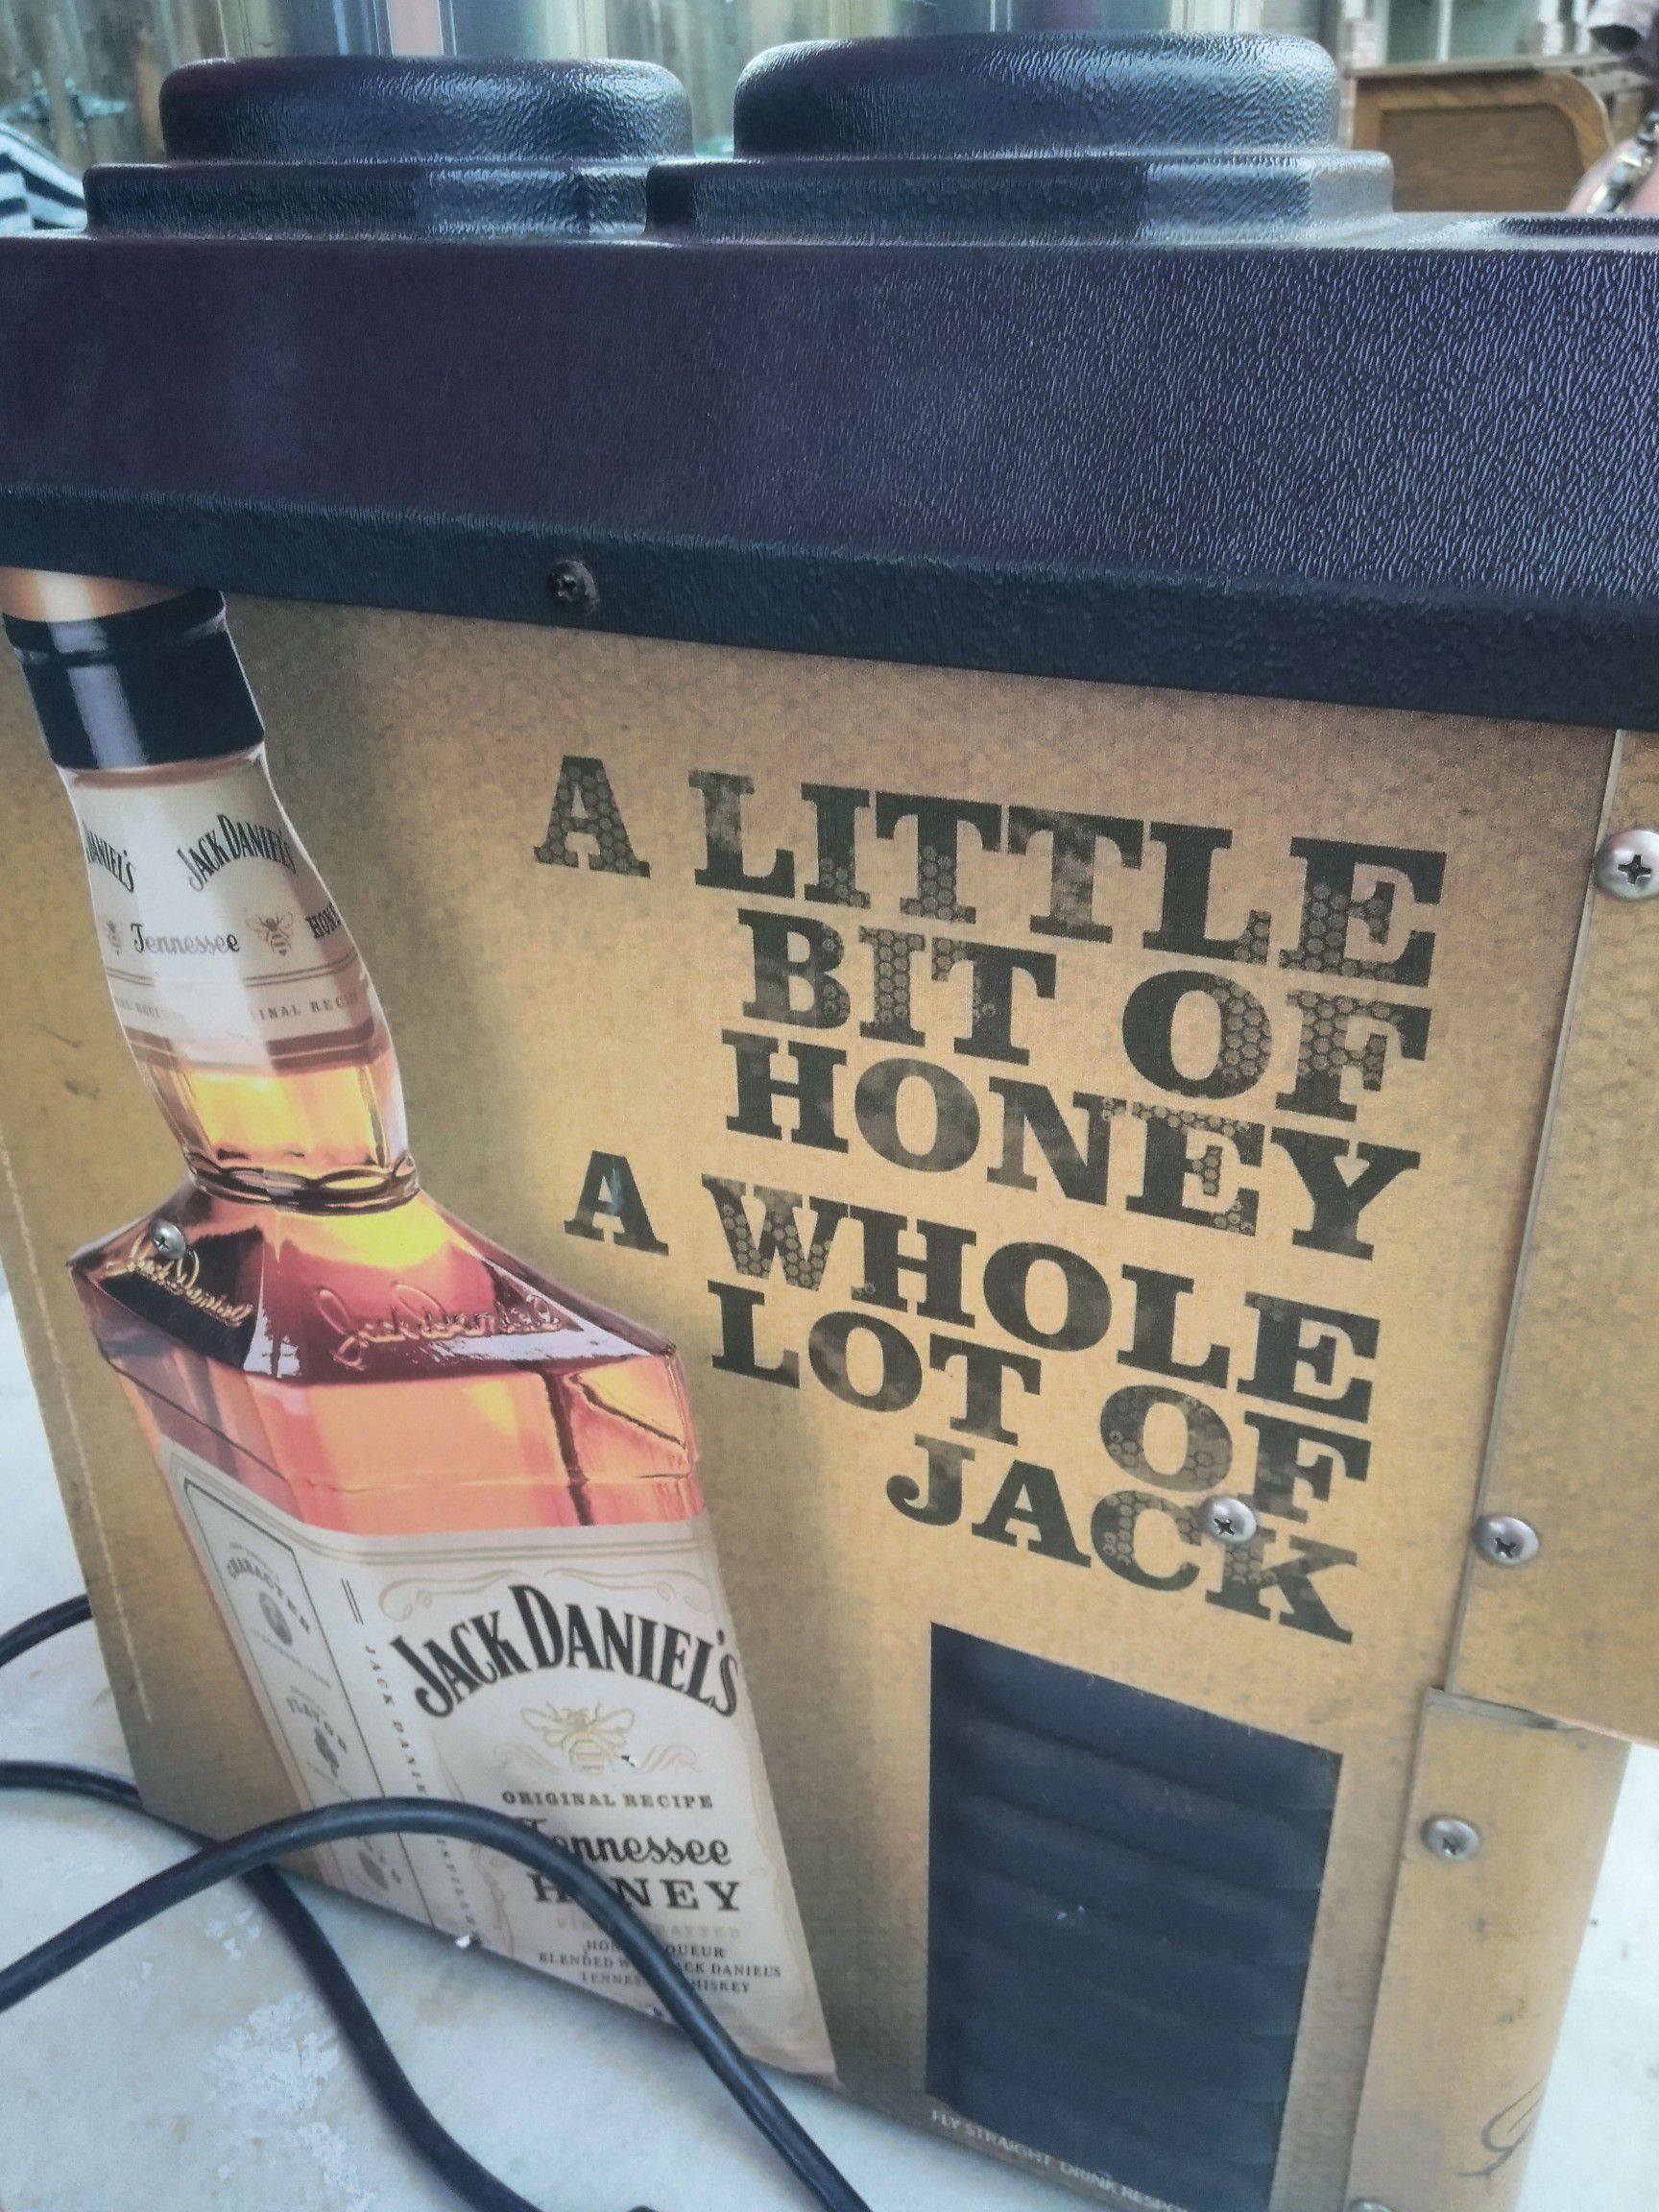 Jack Daniel dispenser